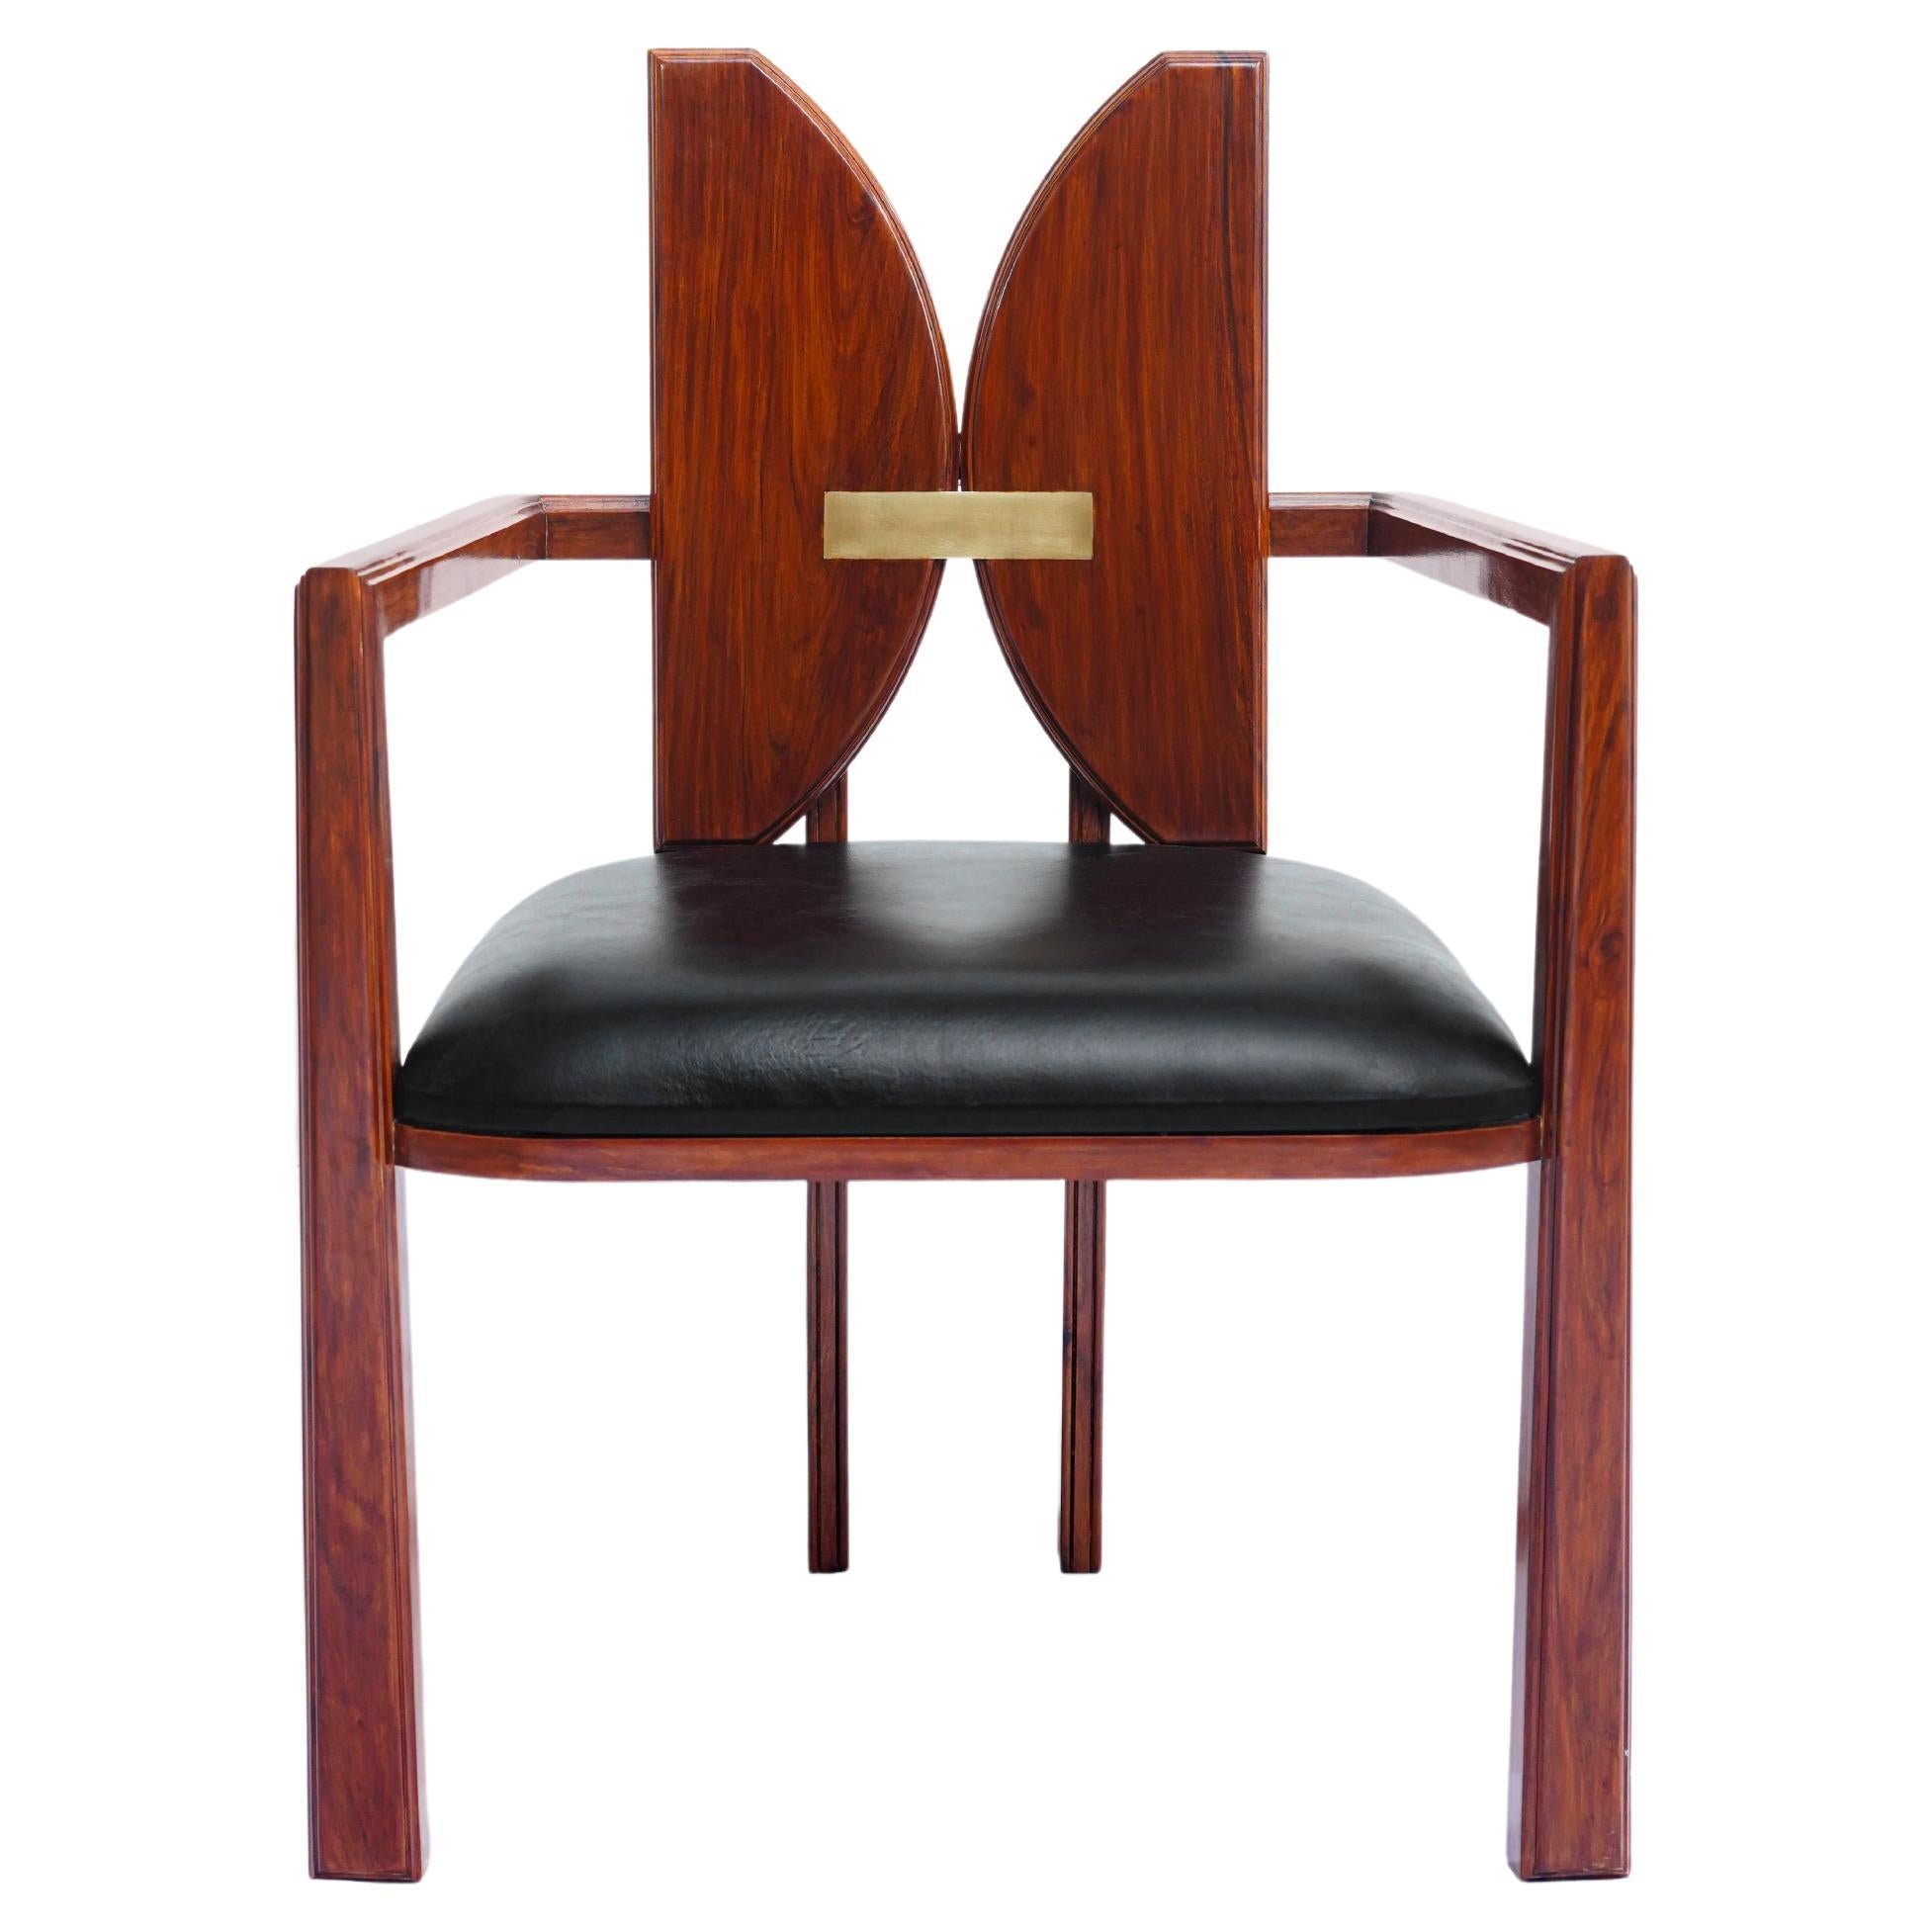 Chaise de salle à manger originale, géométrique, de style transitionnel, art nouveau, audacieuse et moderne